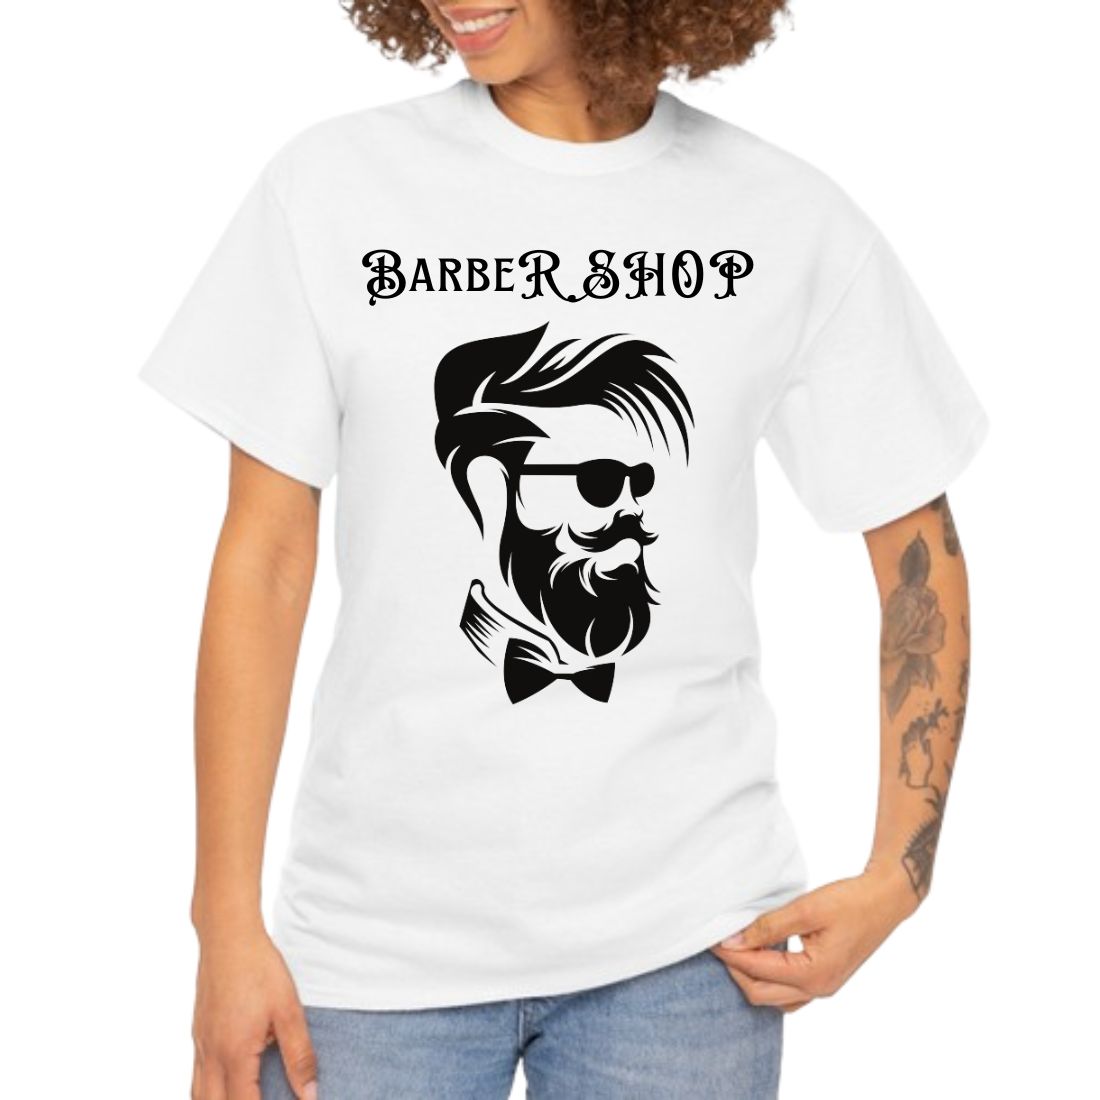 Barber SHOP design preview image.